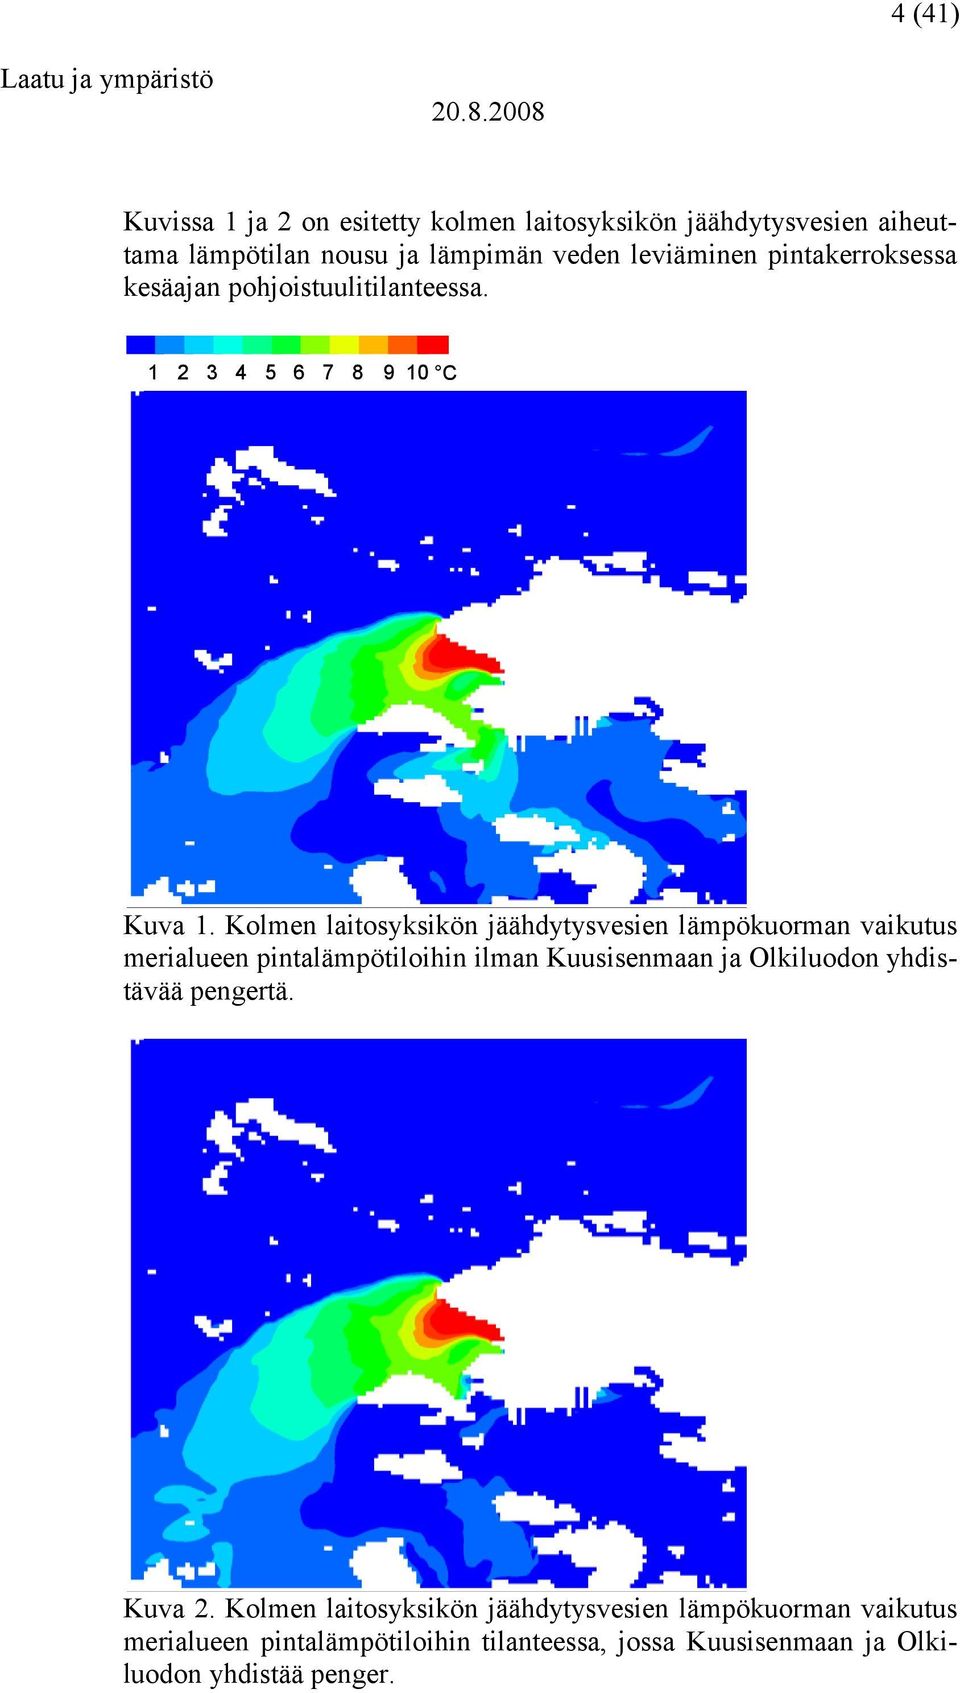 Kolmen laitosyksikön jäähdytysvesien lämpökuorman vaikutus merialueen pintalämpötiloihin ilman Kuusisenmaan ja Olkiluodon